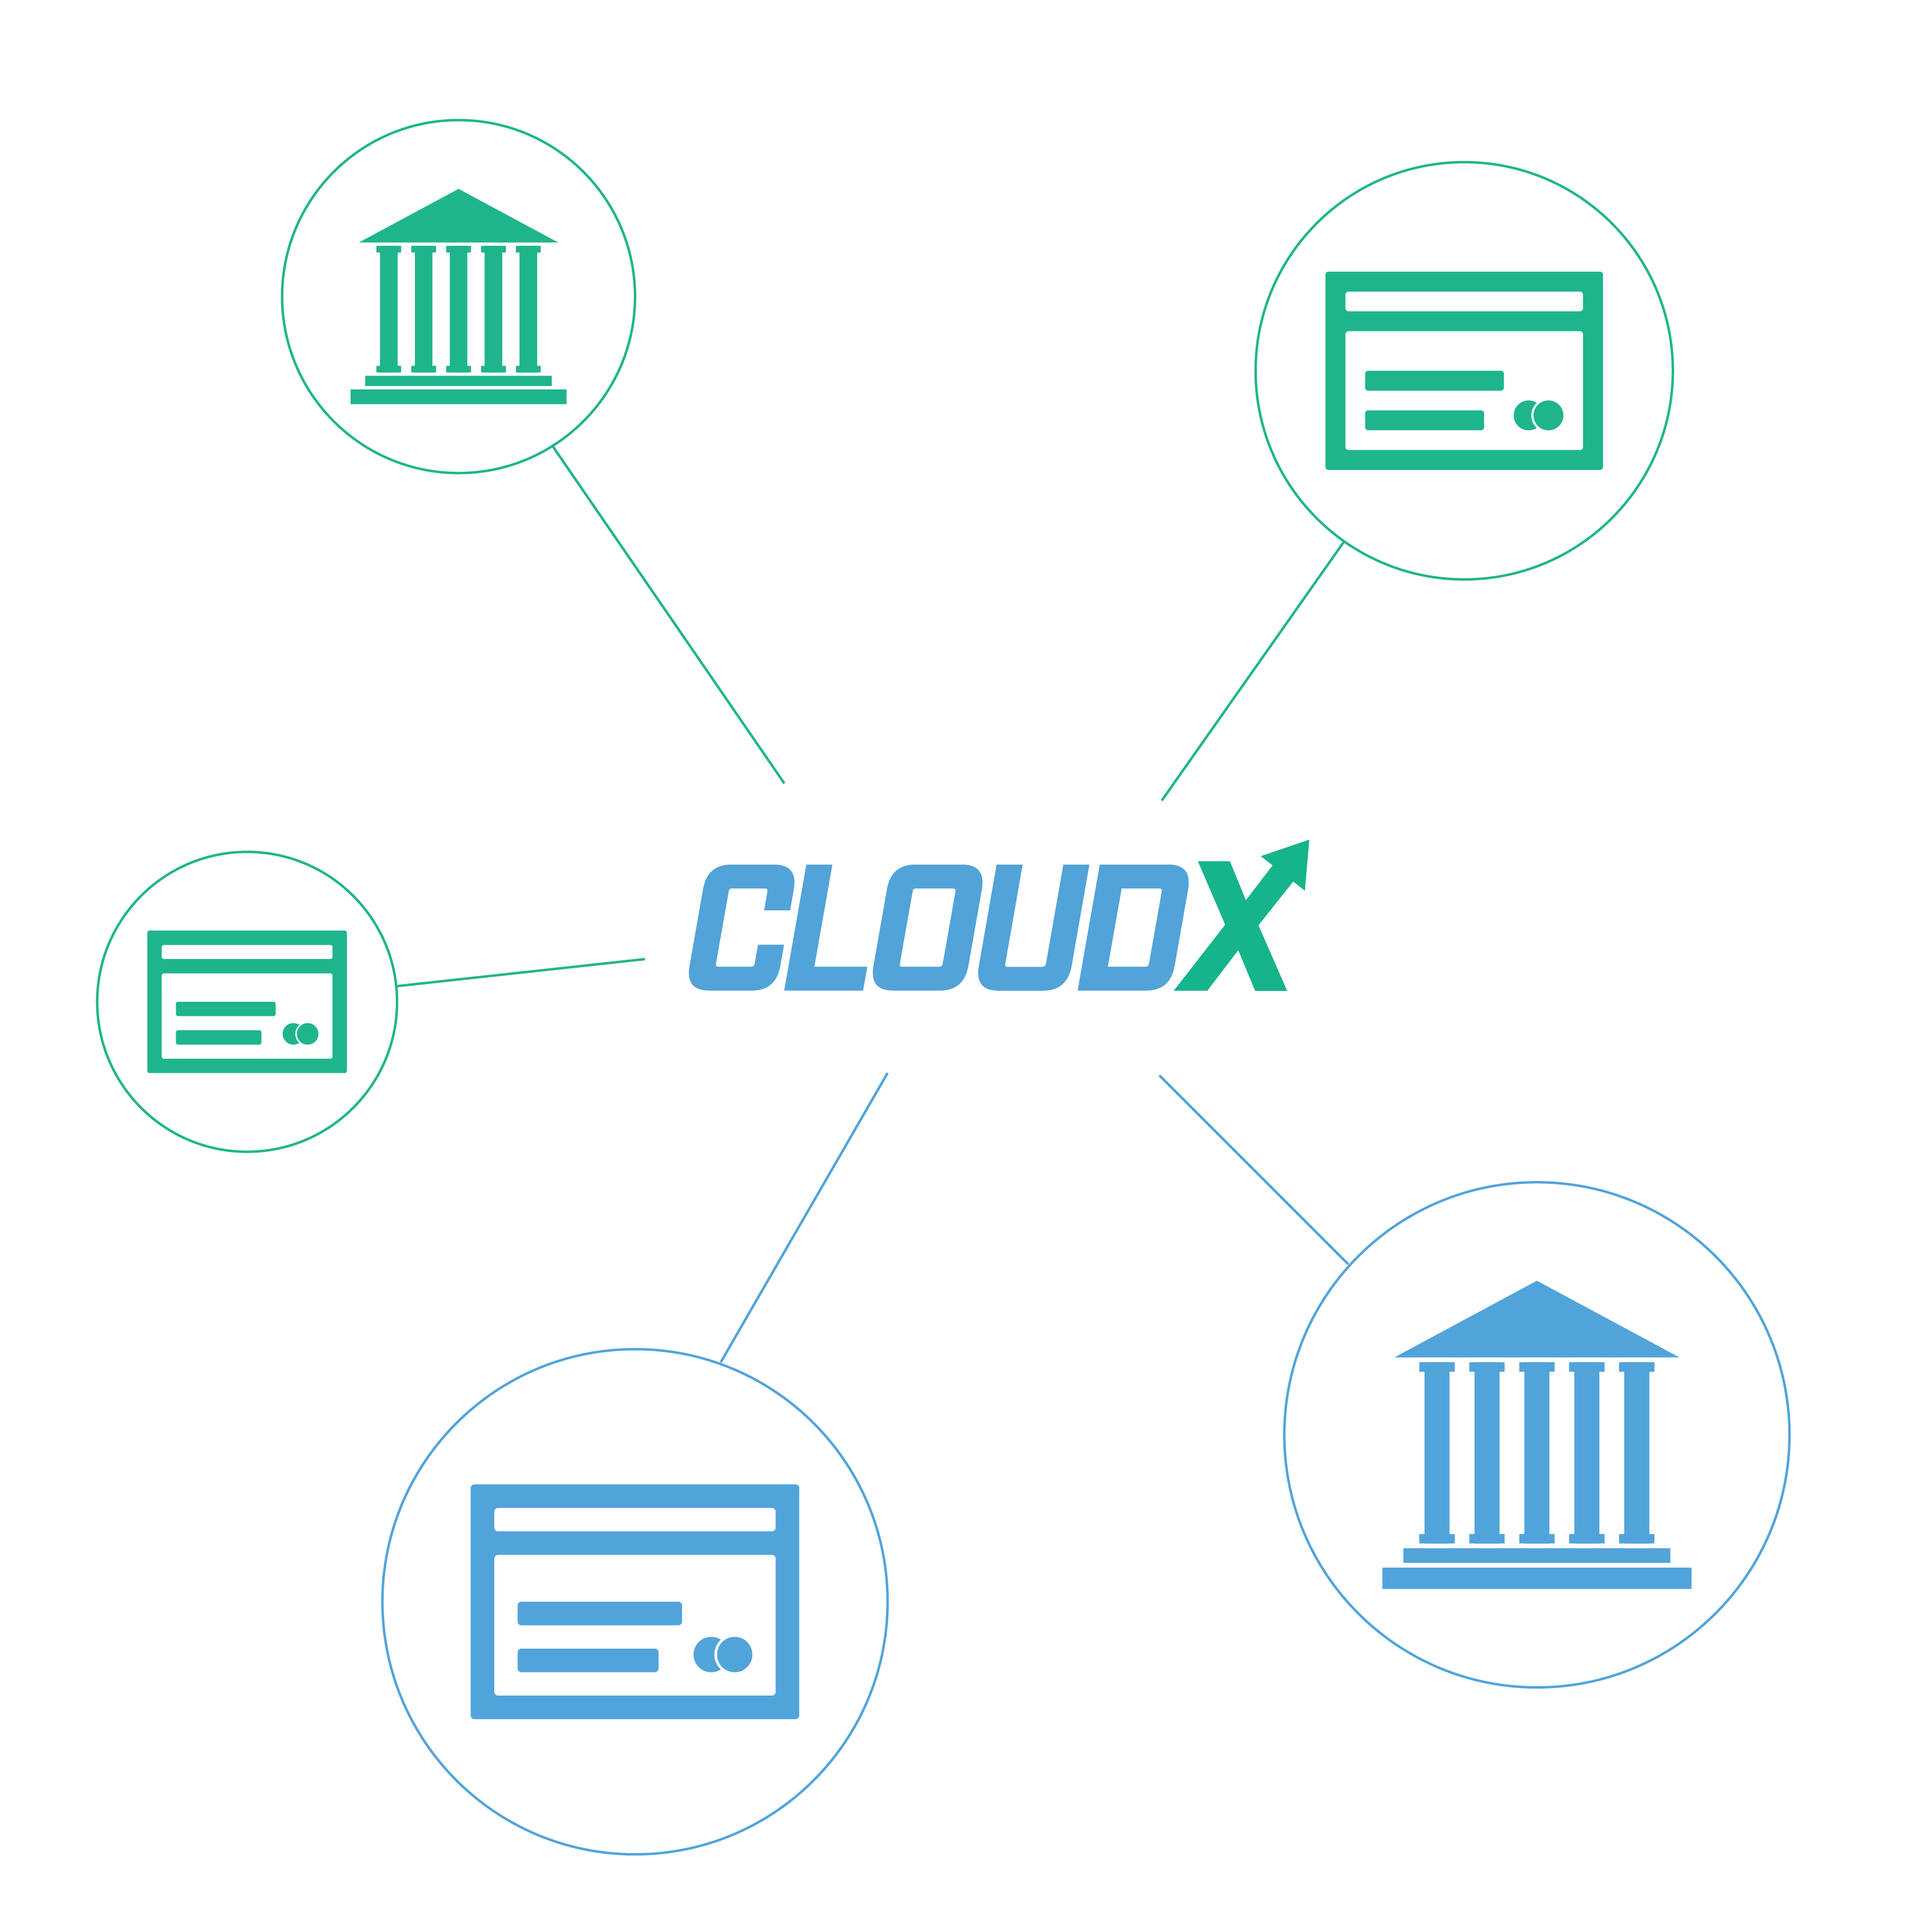 cloudx-definitive-guide-to-ap-automation-07